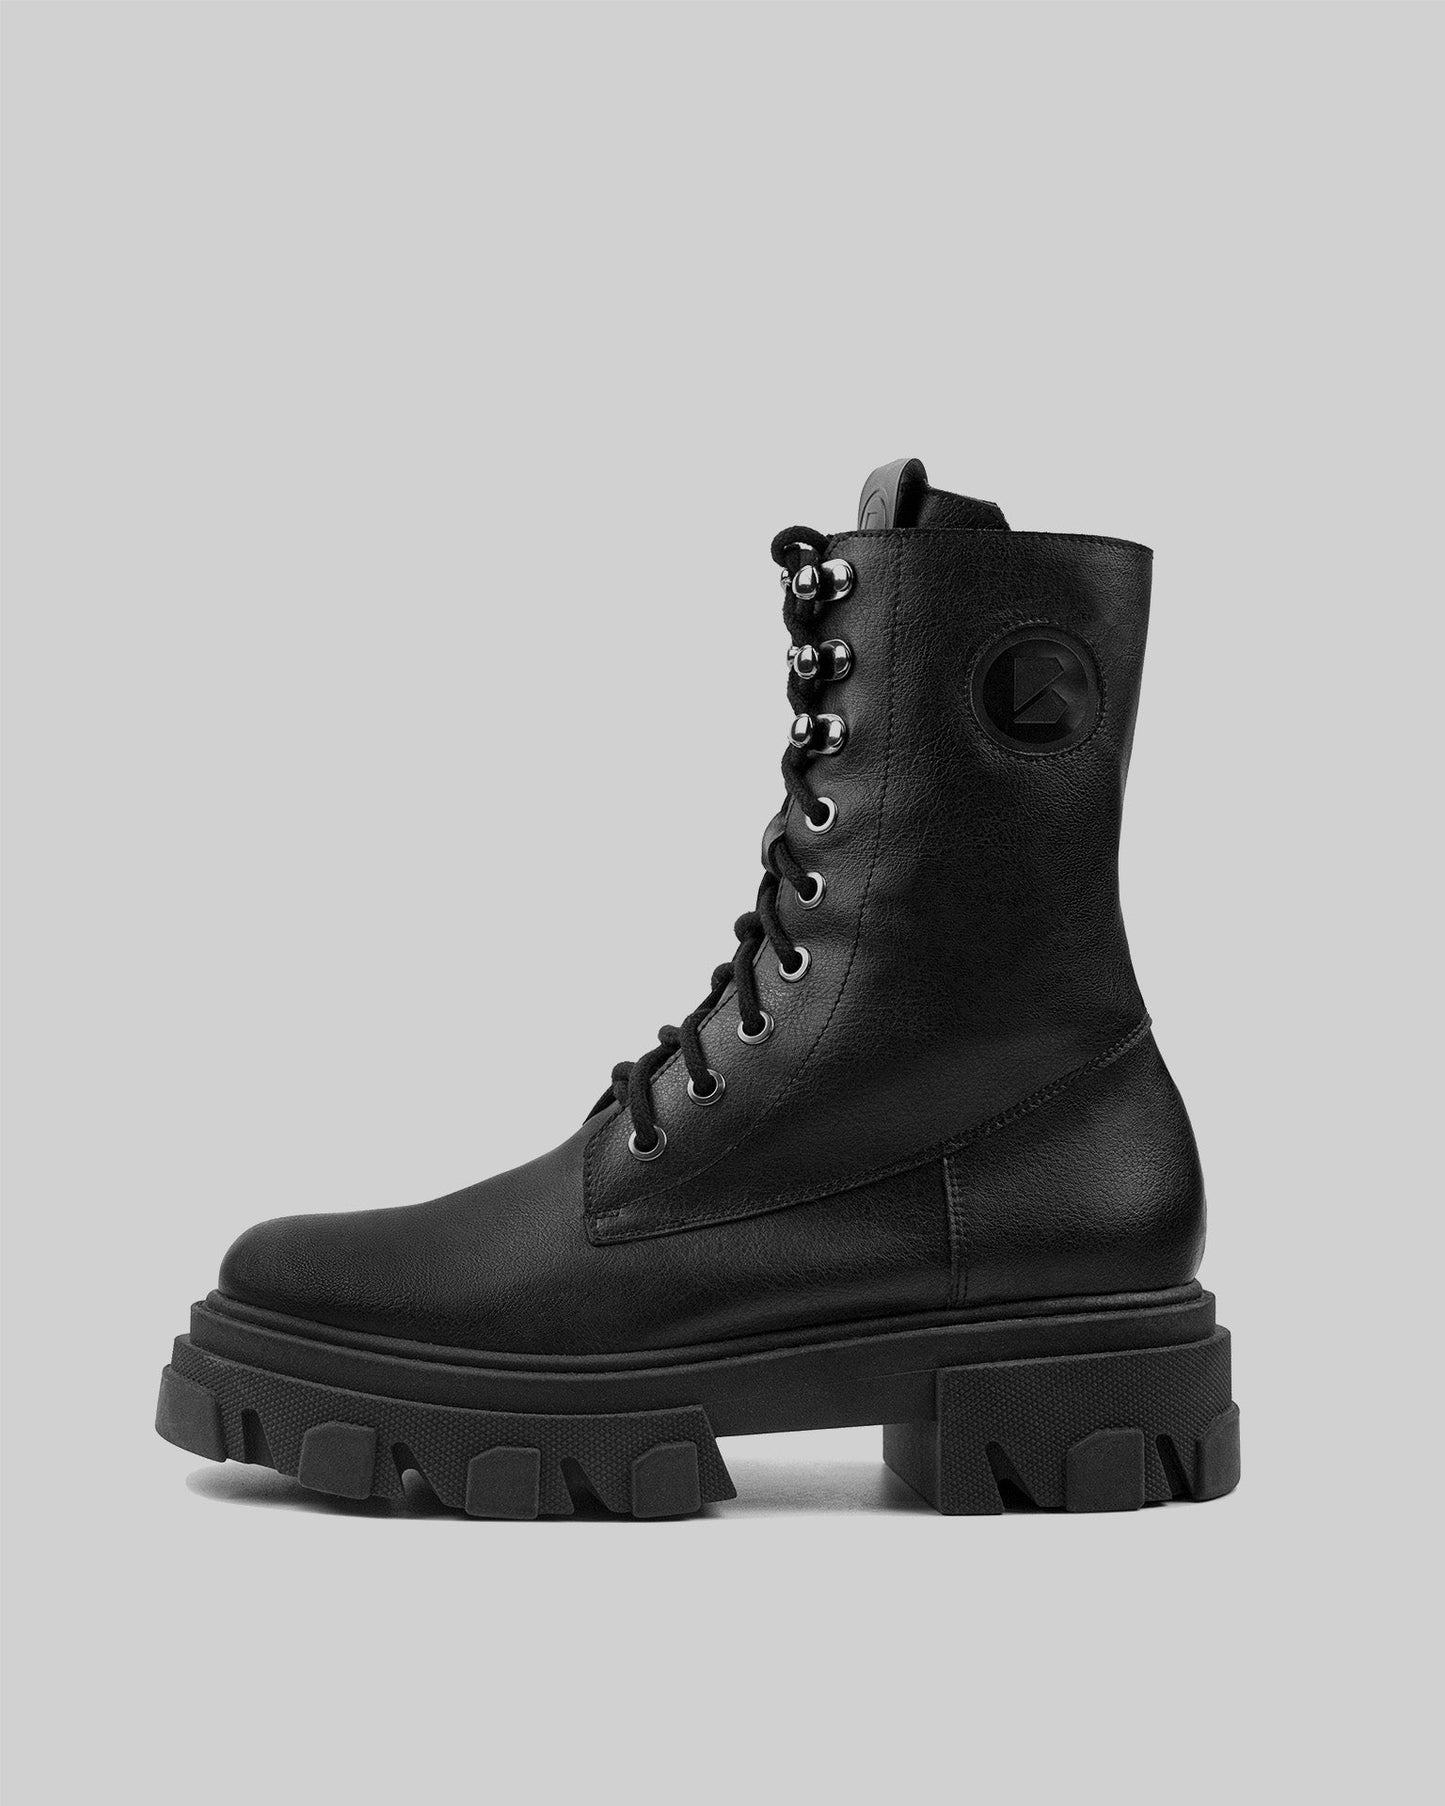 Combat Boots długie wegańskie botki damskie w stylu “worker boots” - model posesyjny